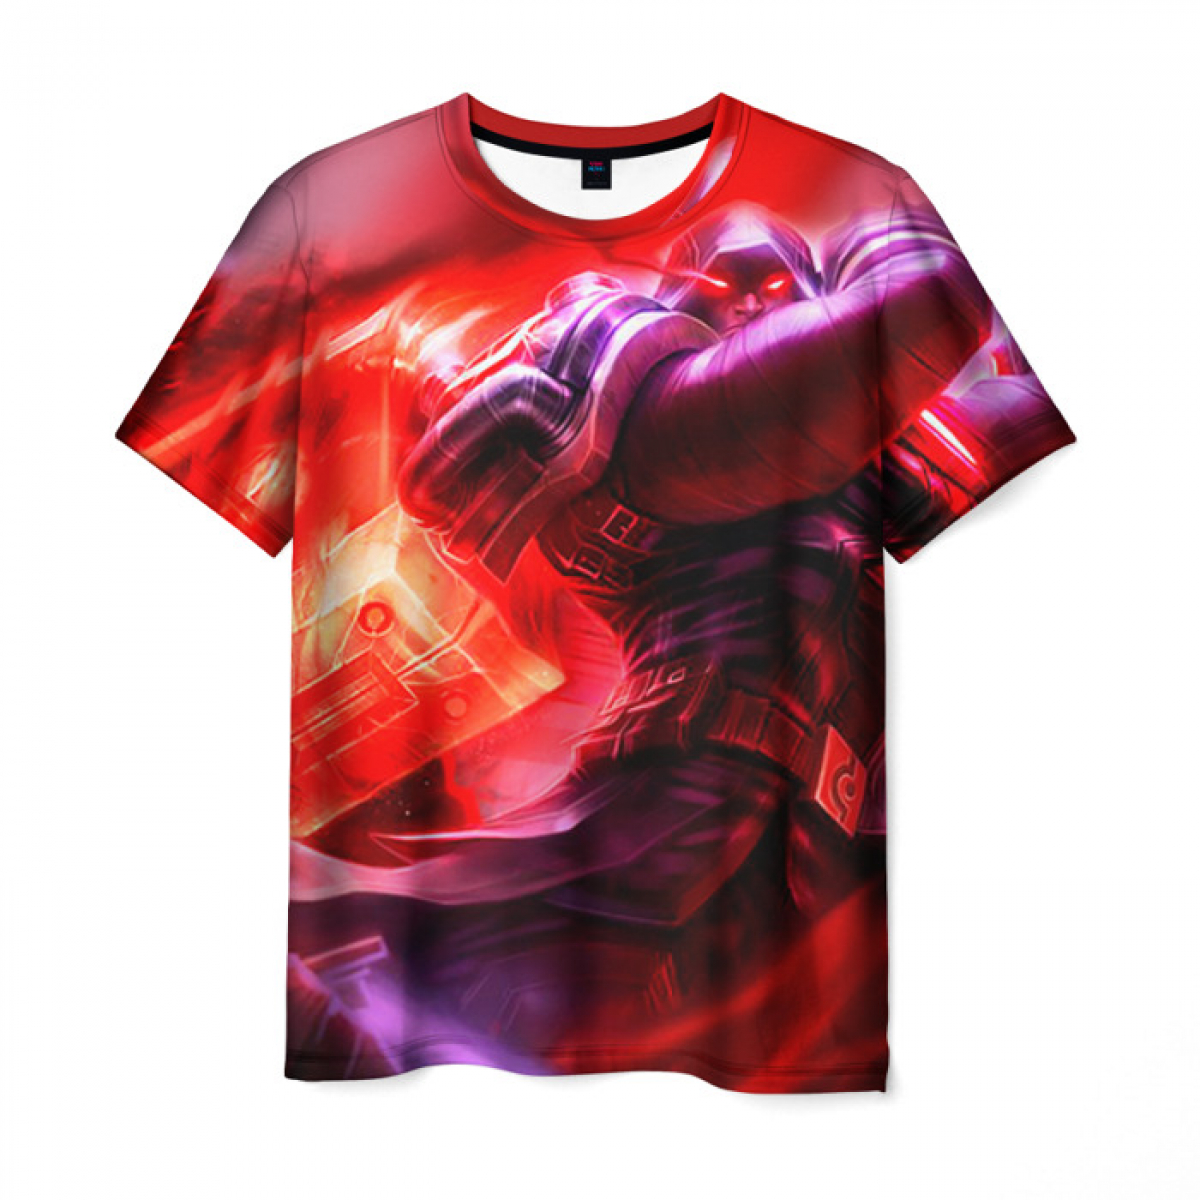 T-shirt League Of Legends Merchandise Print - IdolStore